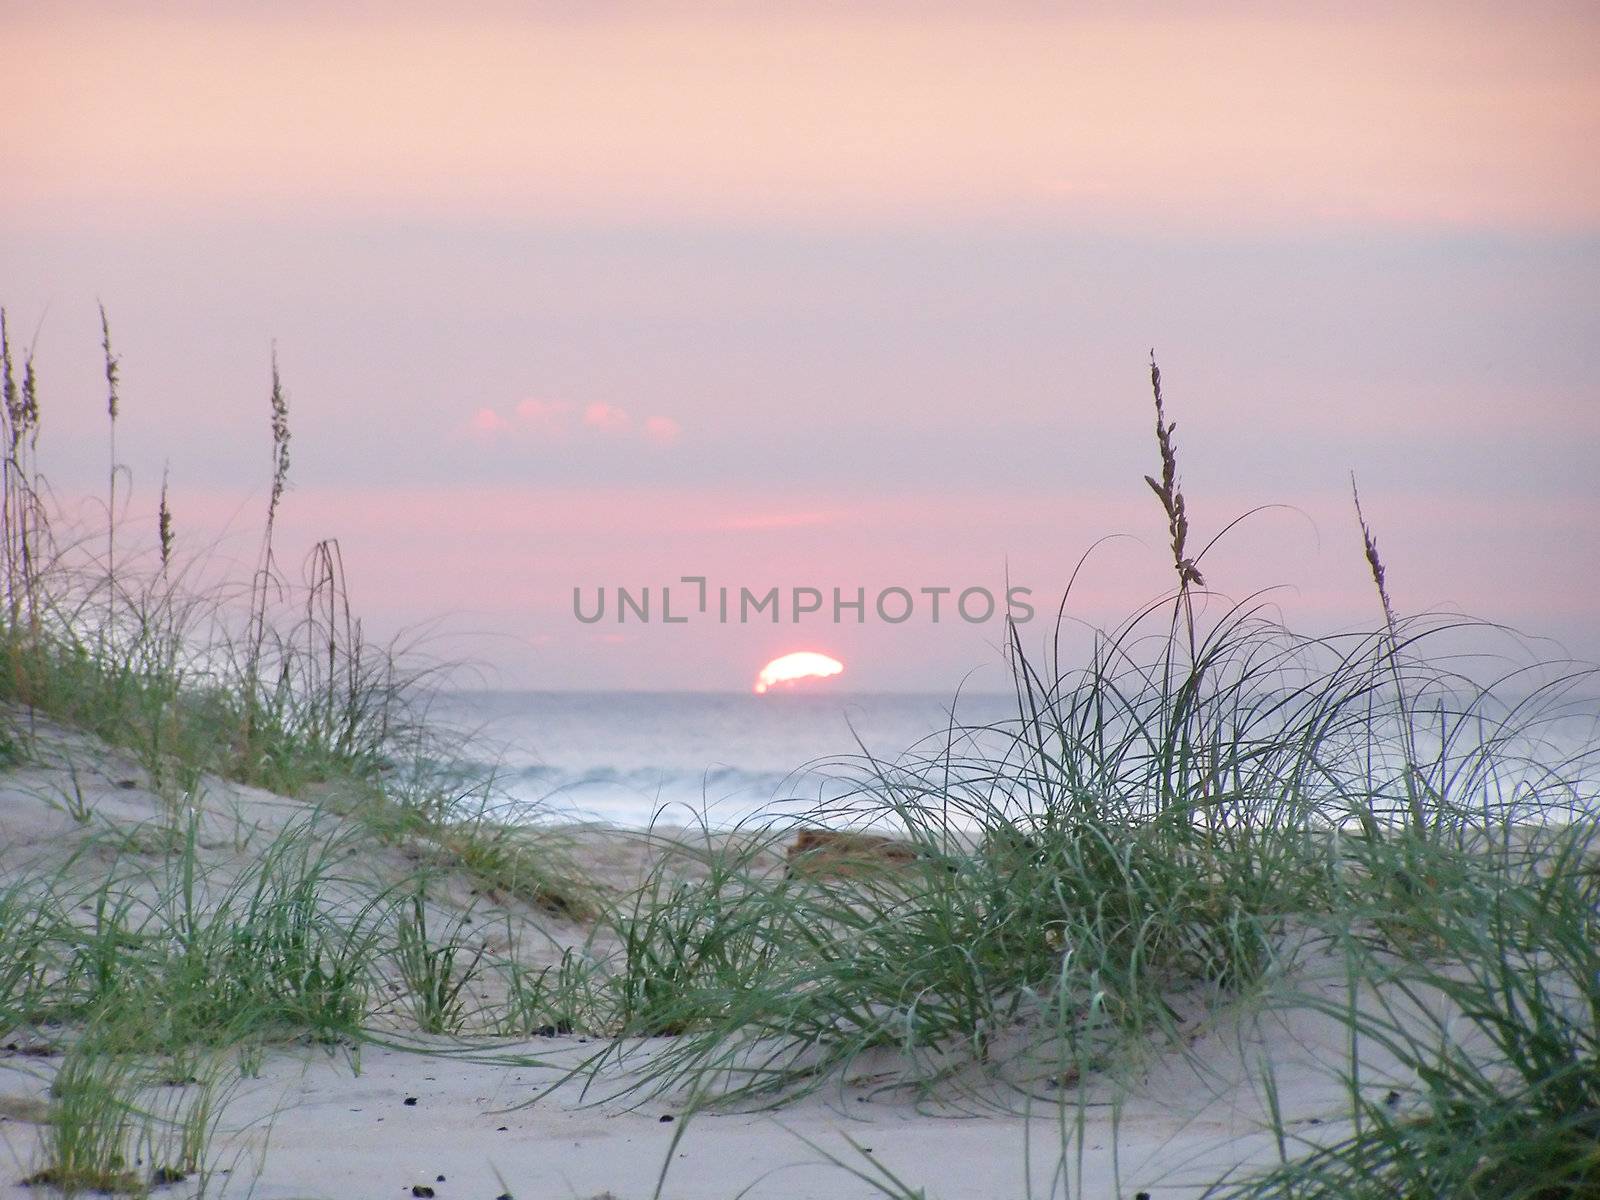 A light sunrise on the Carolina coast